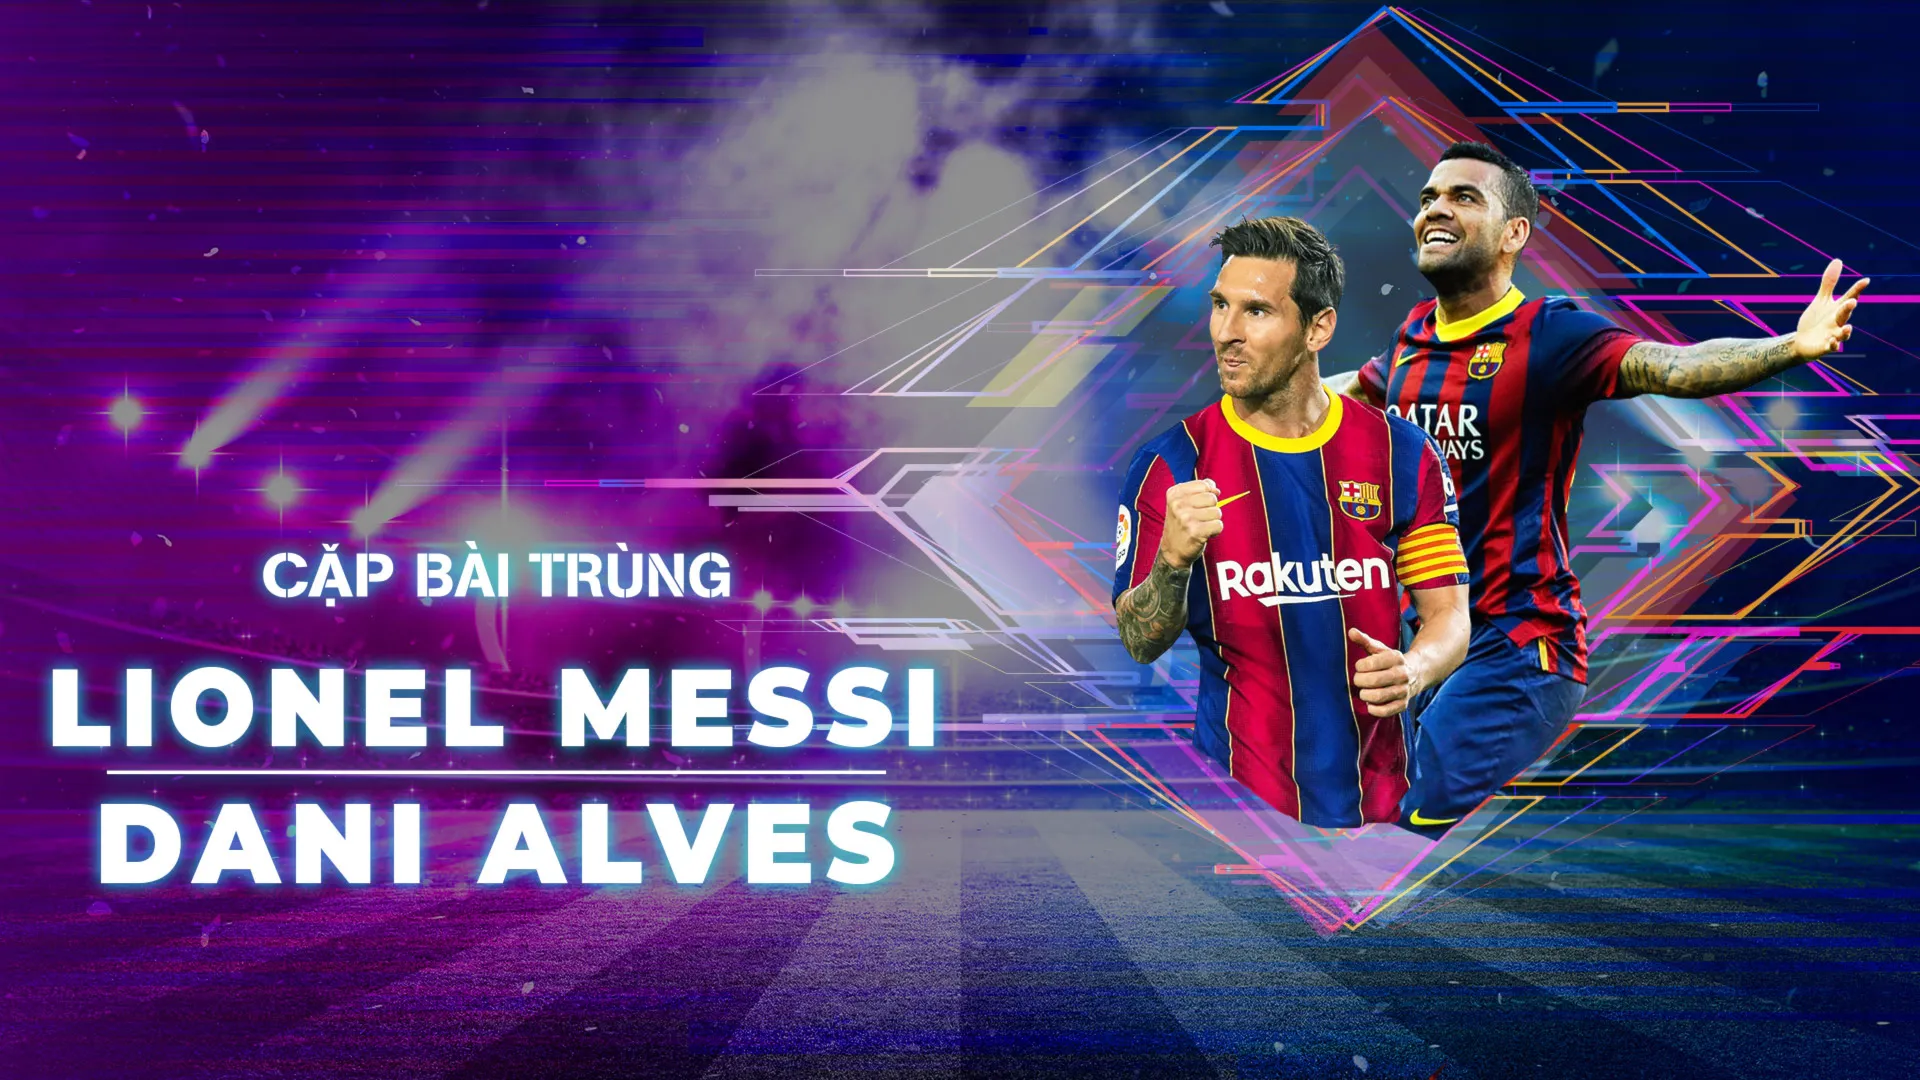 Lionel Messi - Dani Alves | Cặp Bài Trùng